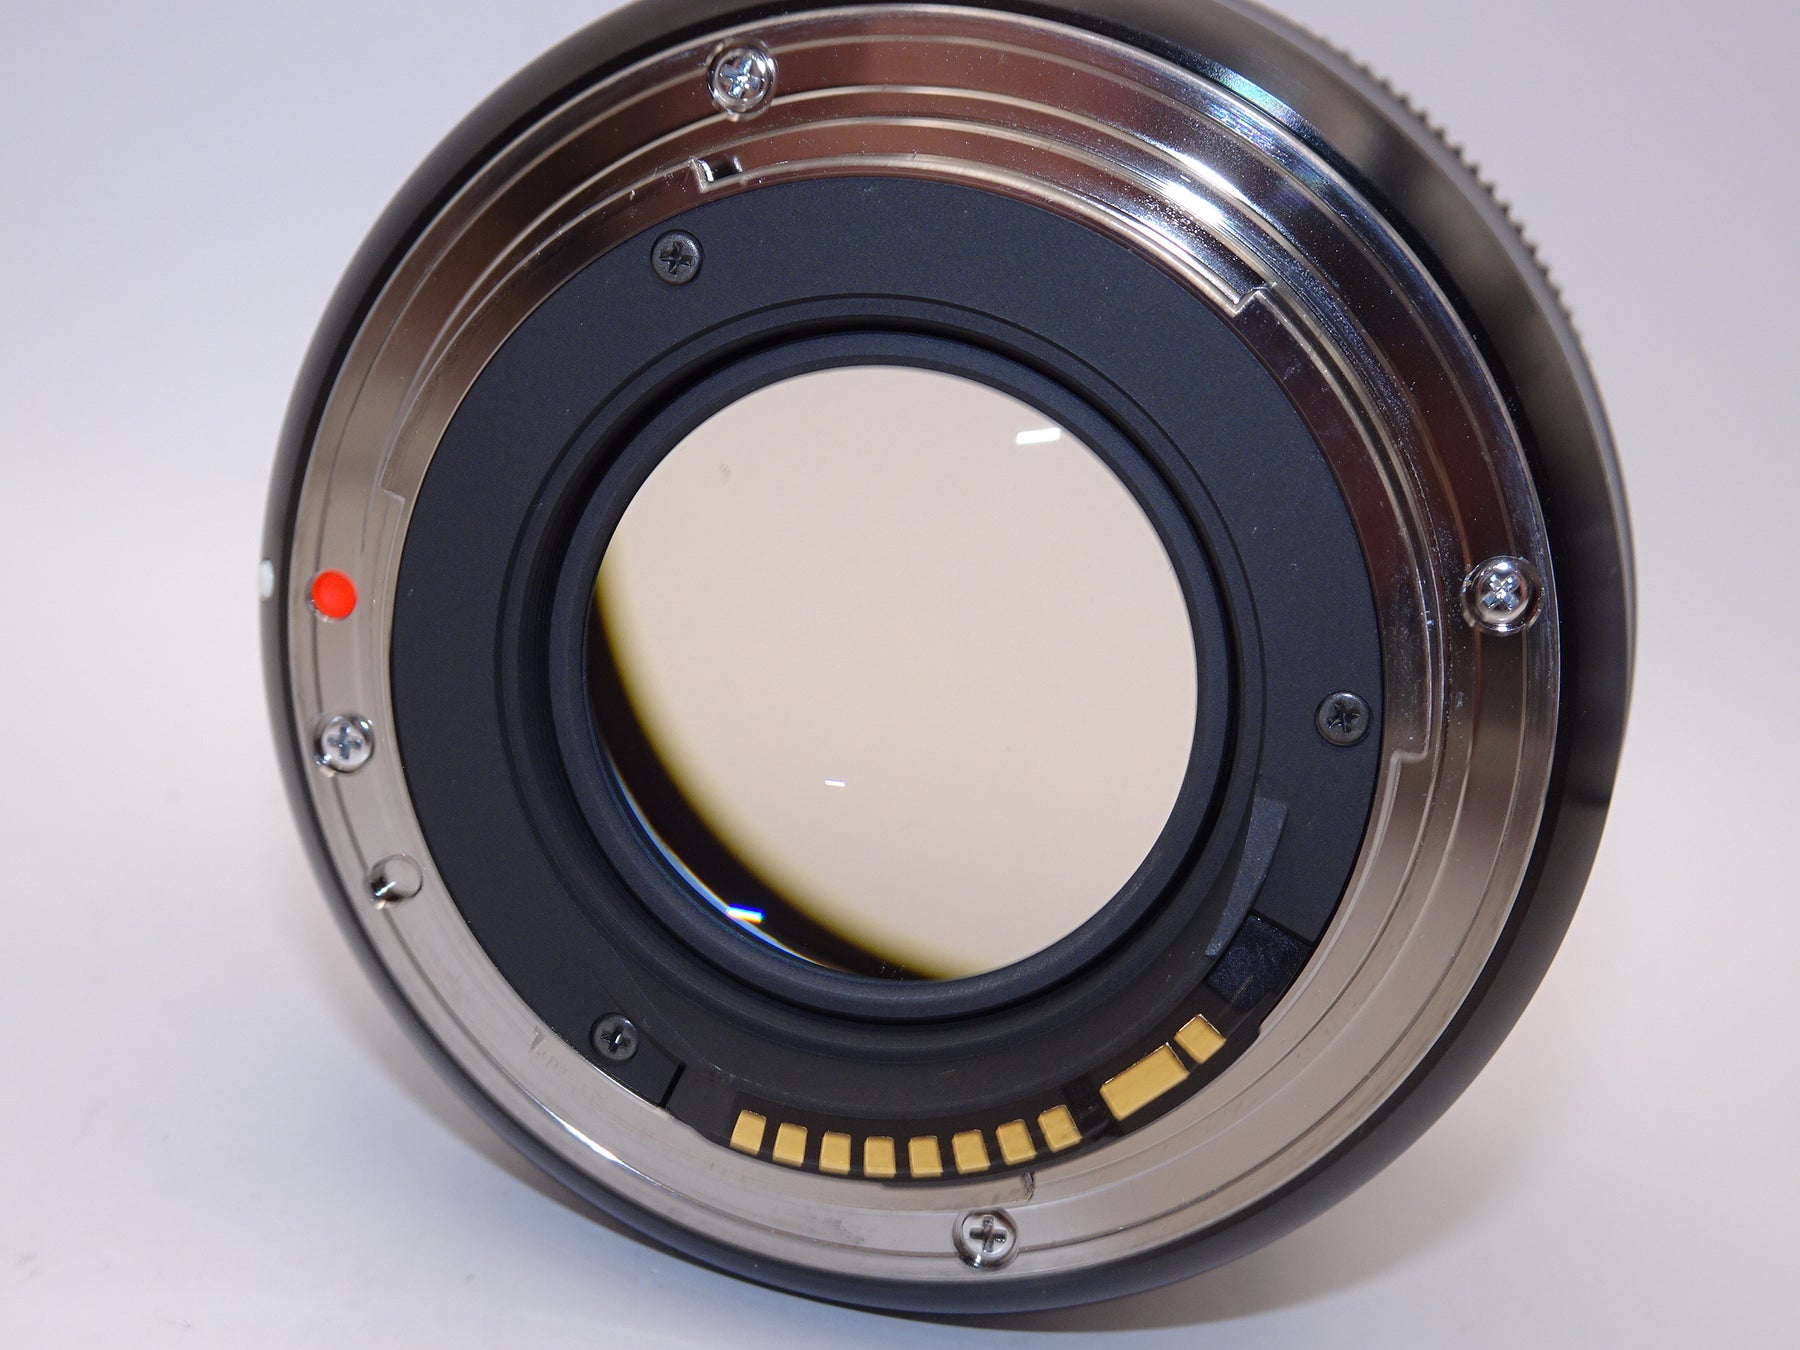 【外観特上級】SIGMA 単焦点レンズ Art 30mm F1.4 DC HSM キヤノン用 APS-C専用